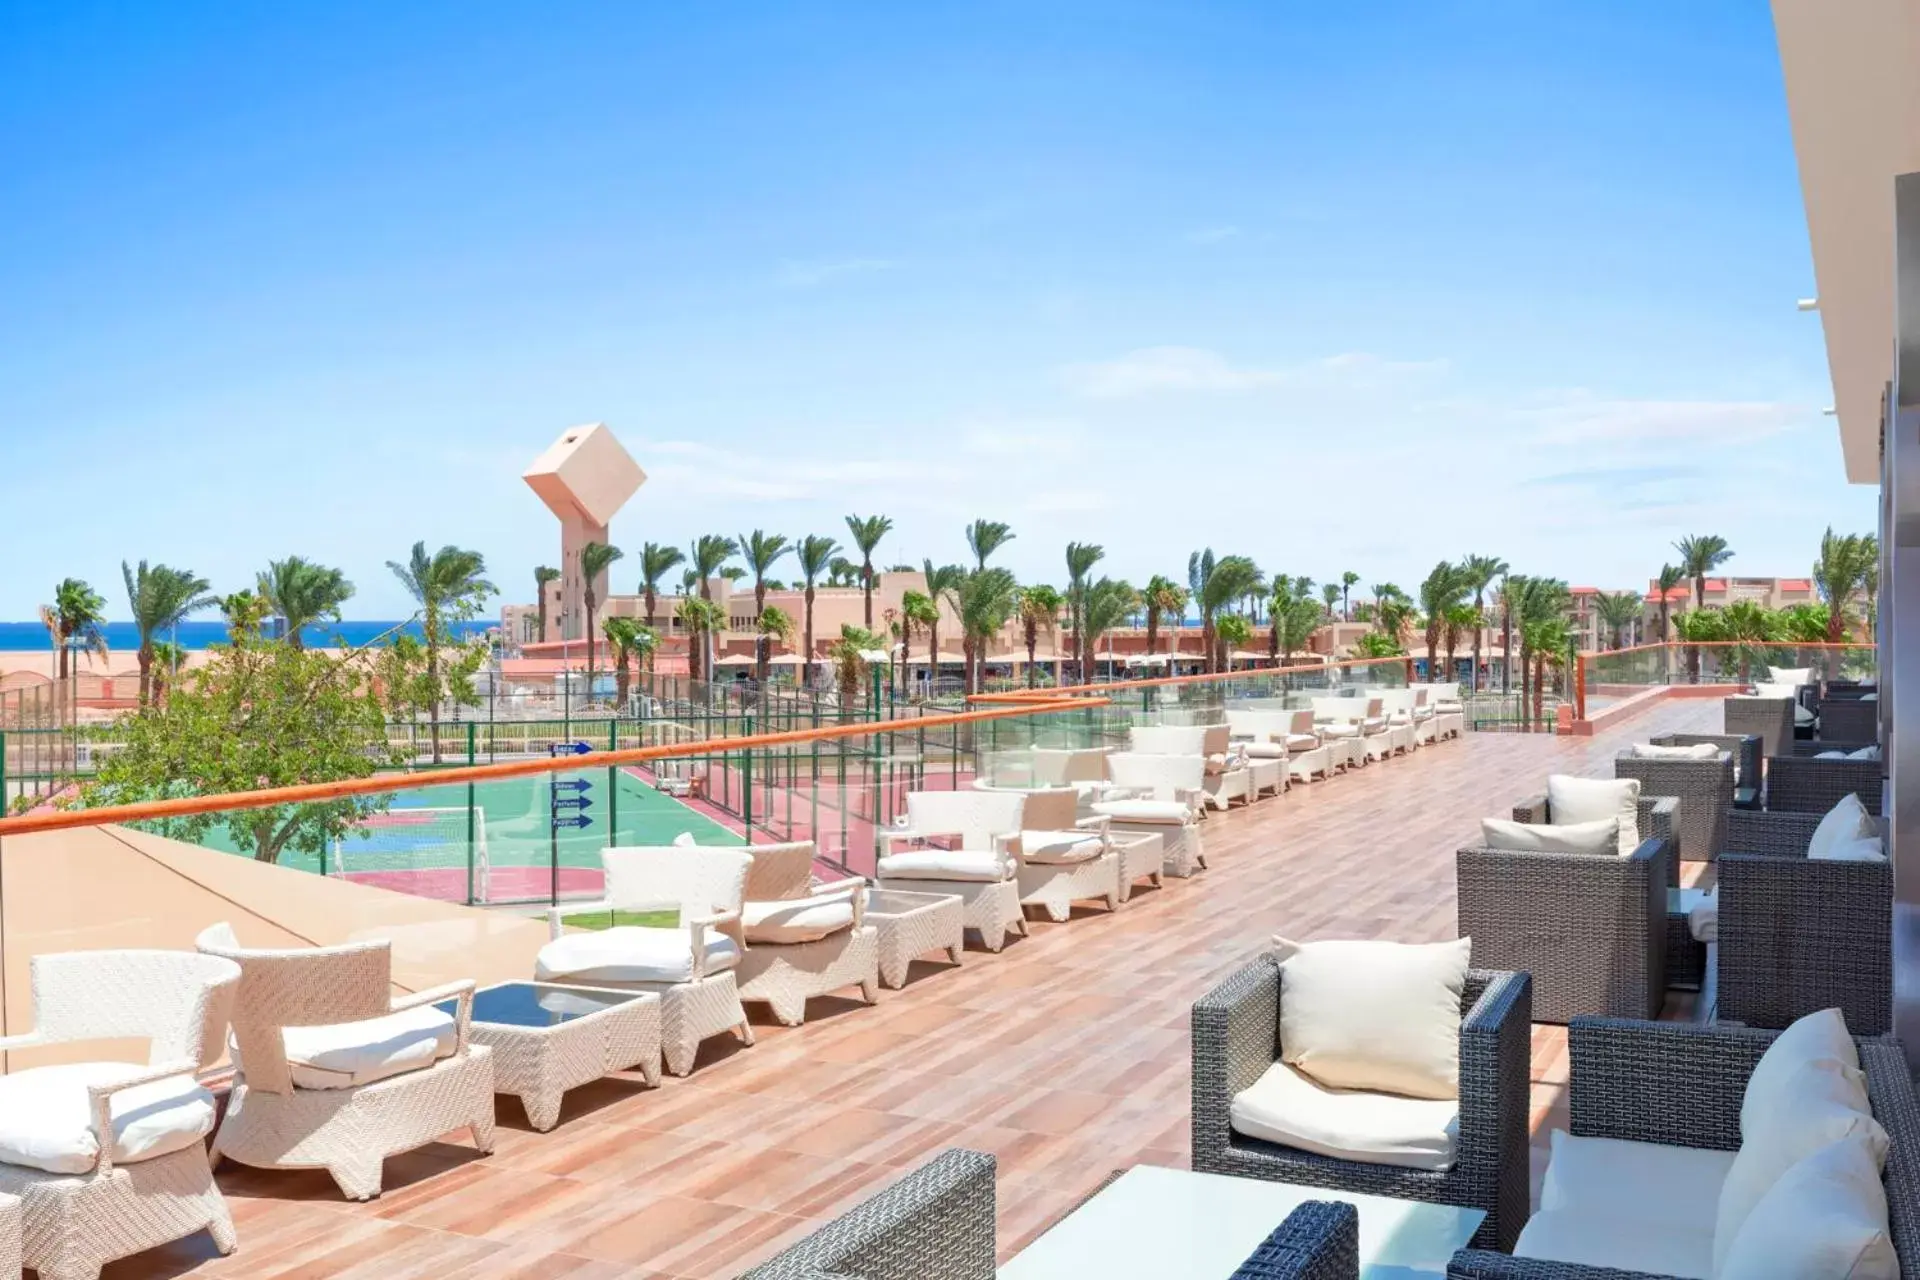 Lounge or bar in Pickalbatros Aqua Park Resort - Hurghada